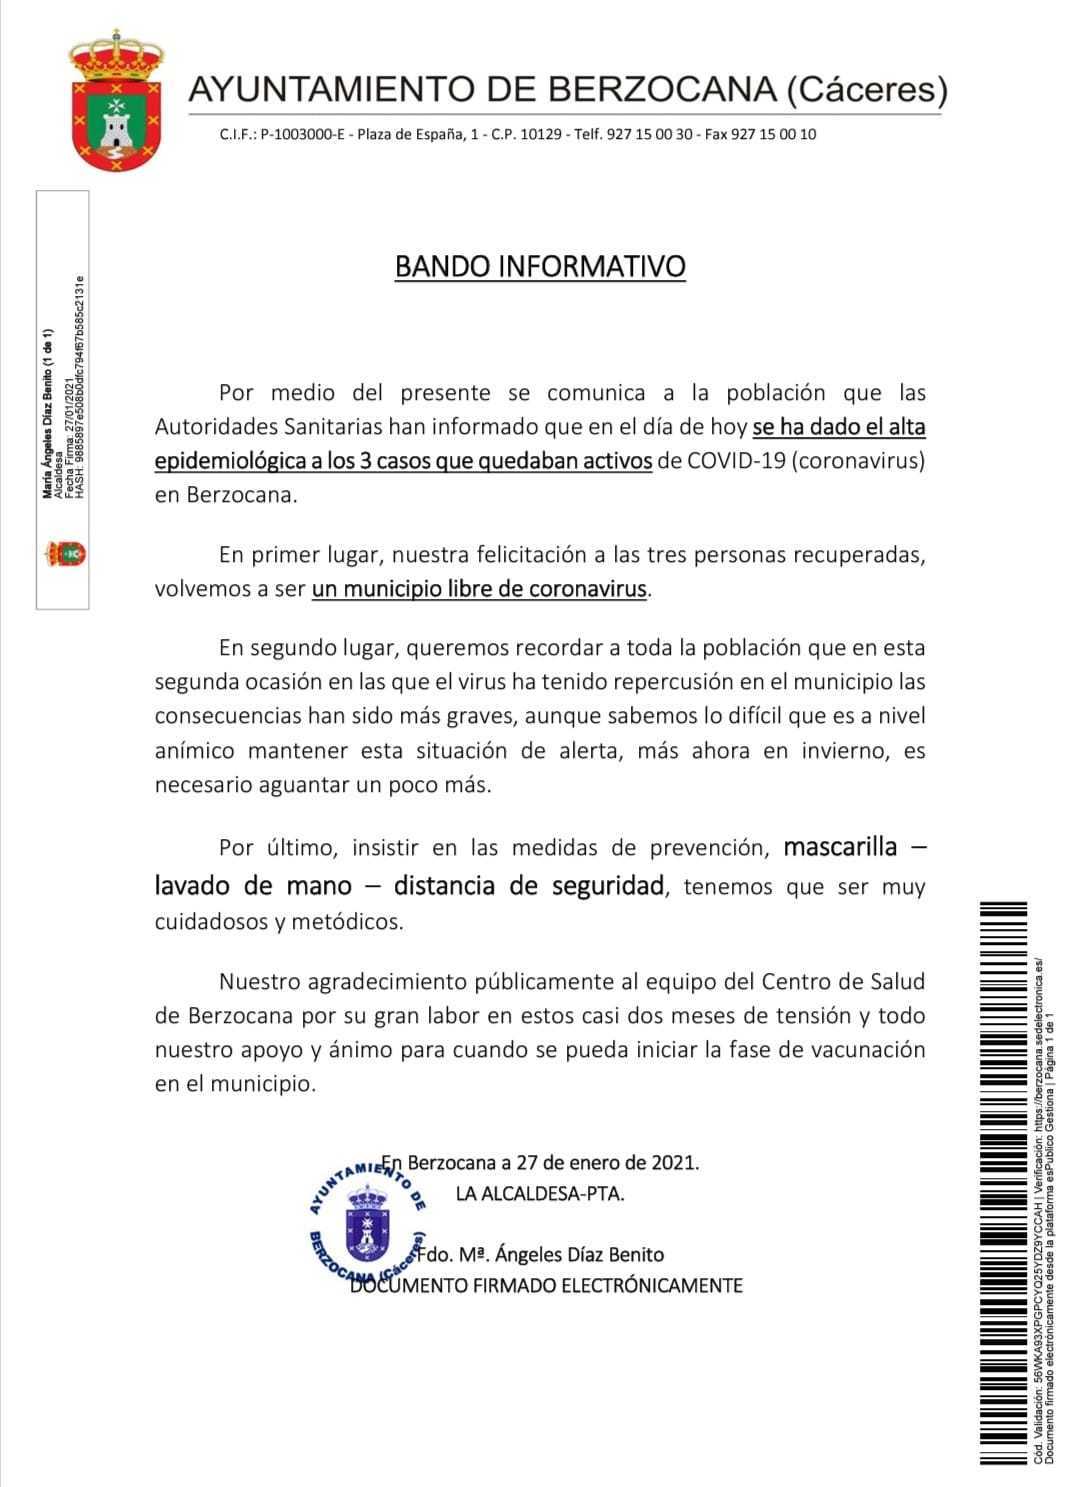 Libre de COVID-19 (enero 2021) - Berzocana (Cáceres)